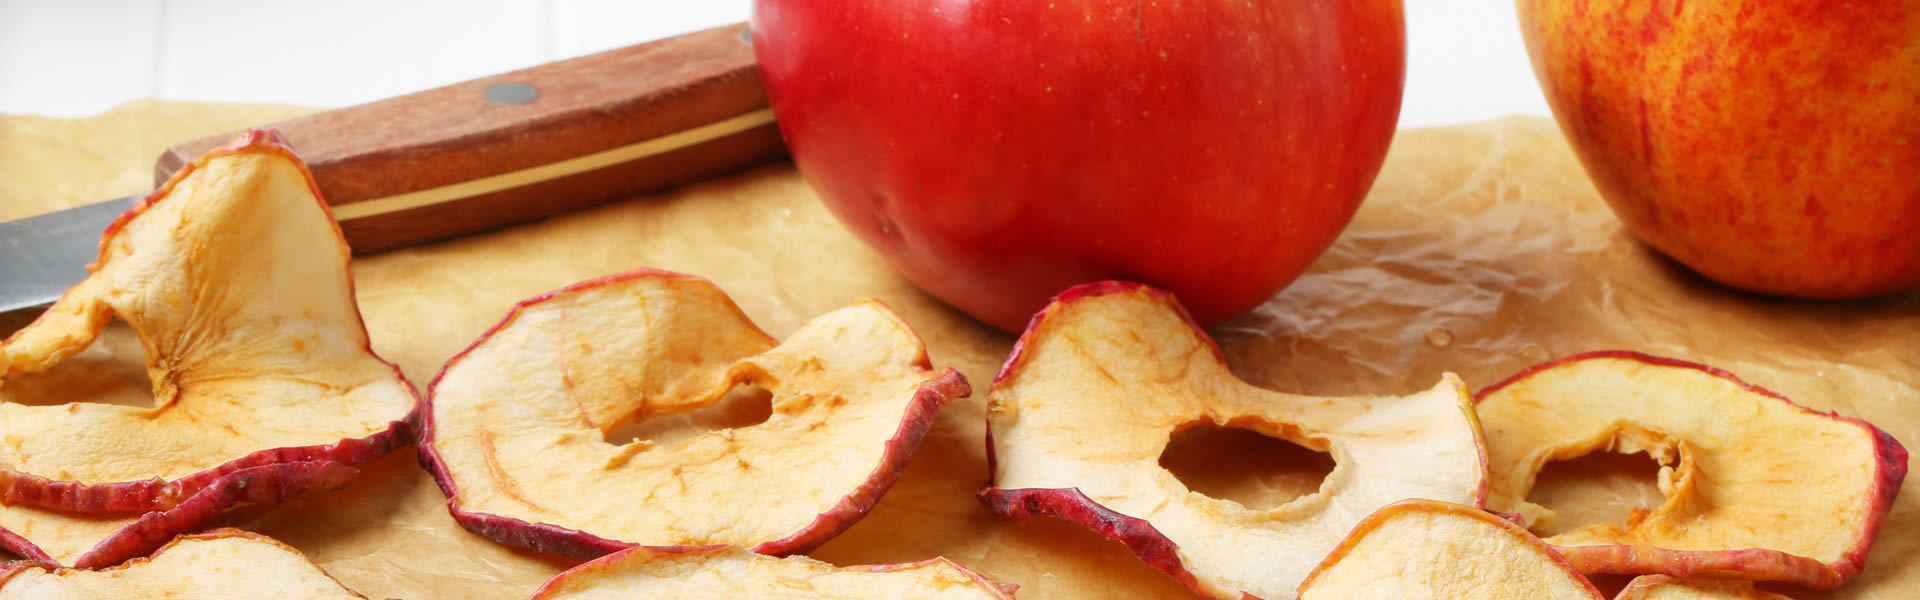 Unsere Apfelchips - der gesunde, leckere, knusprige Knabber-Hit!